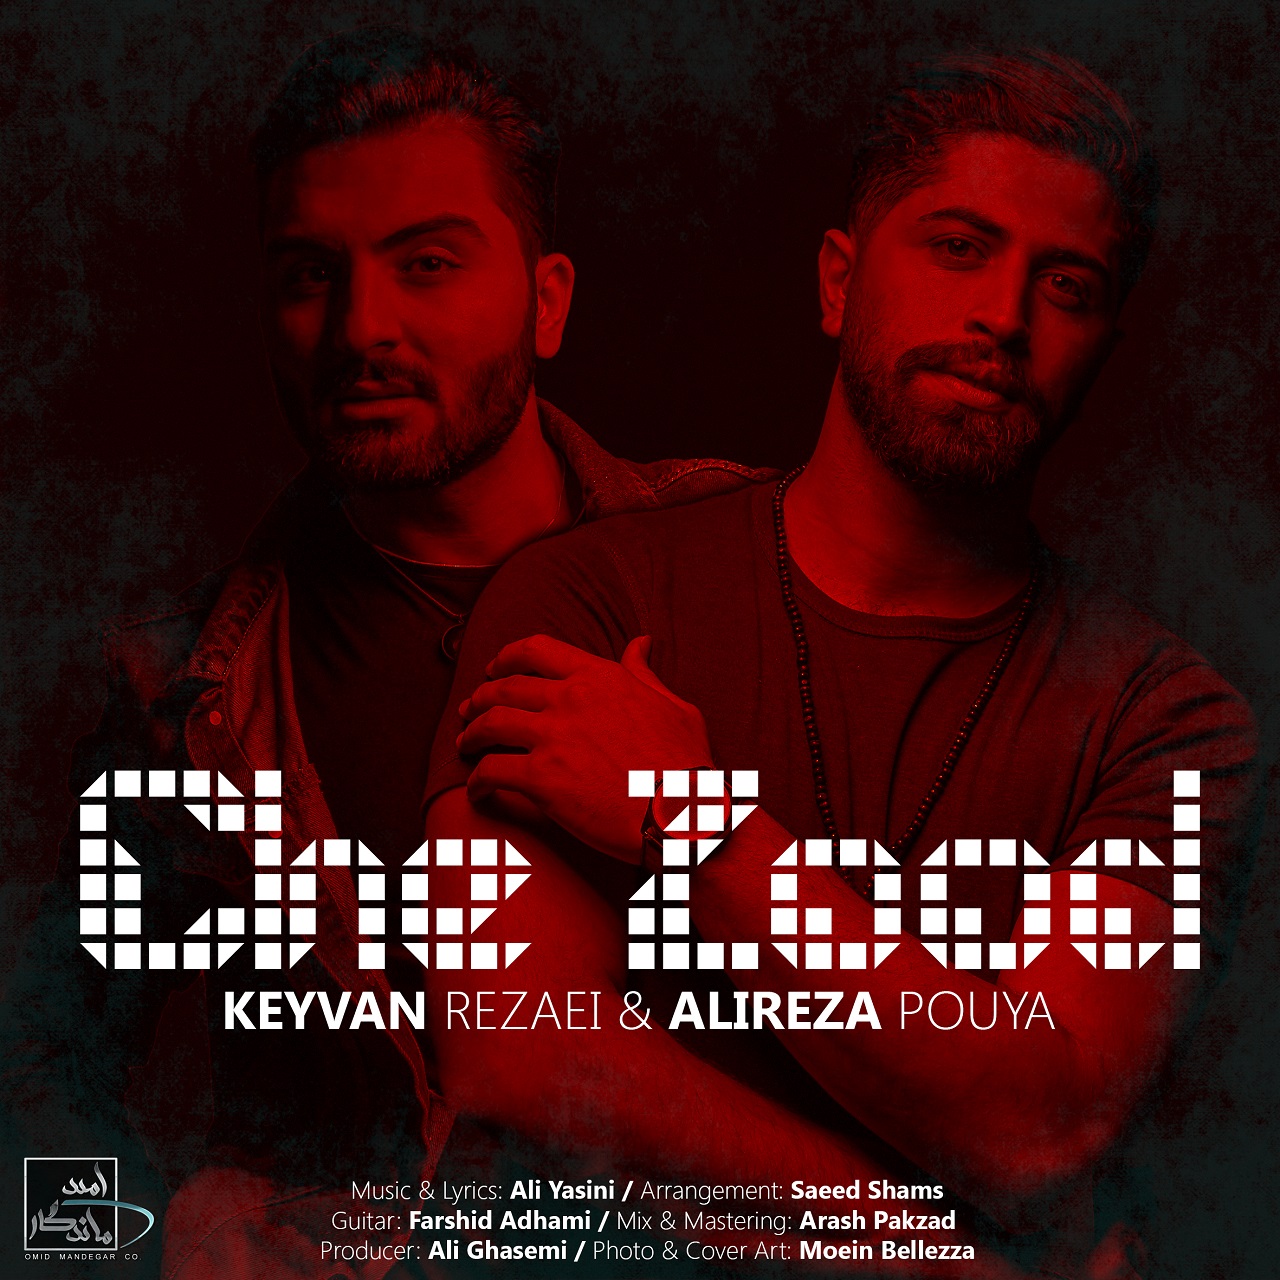  دانلود آهنگ جدید علیرضا پویا و کیوان رضایی - چه زود | Download New Music By Alireza Pouya & Keyvan Rezaei - Che Zood